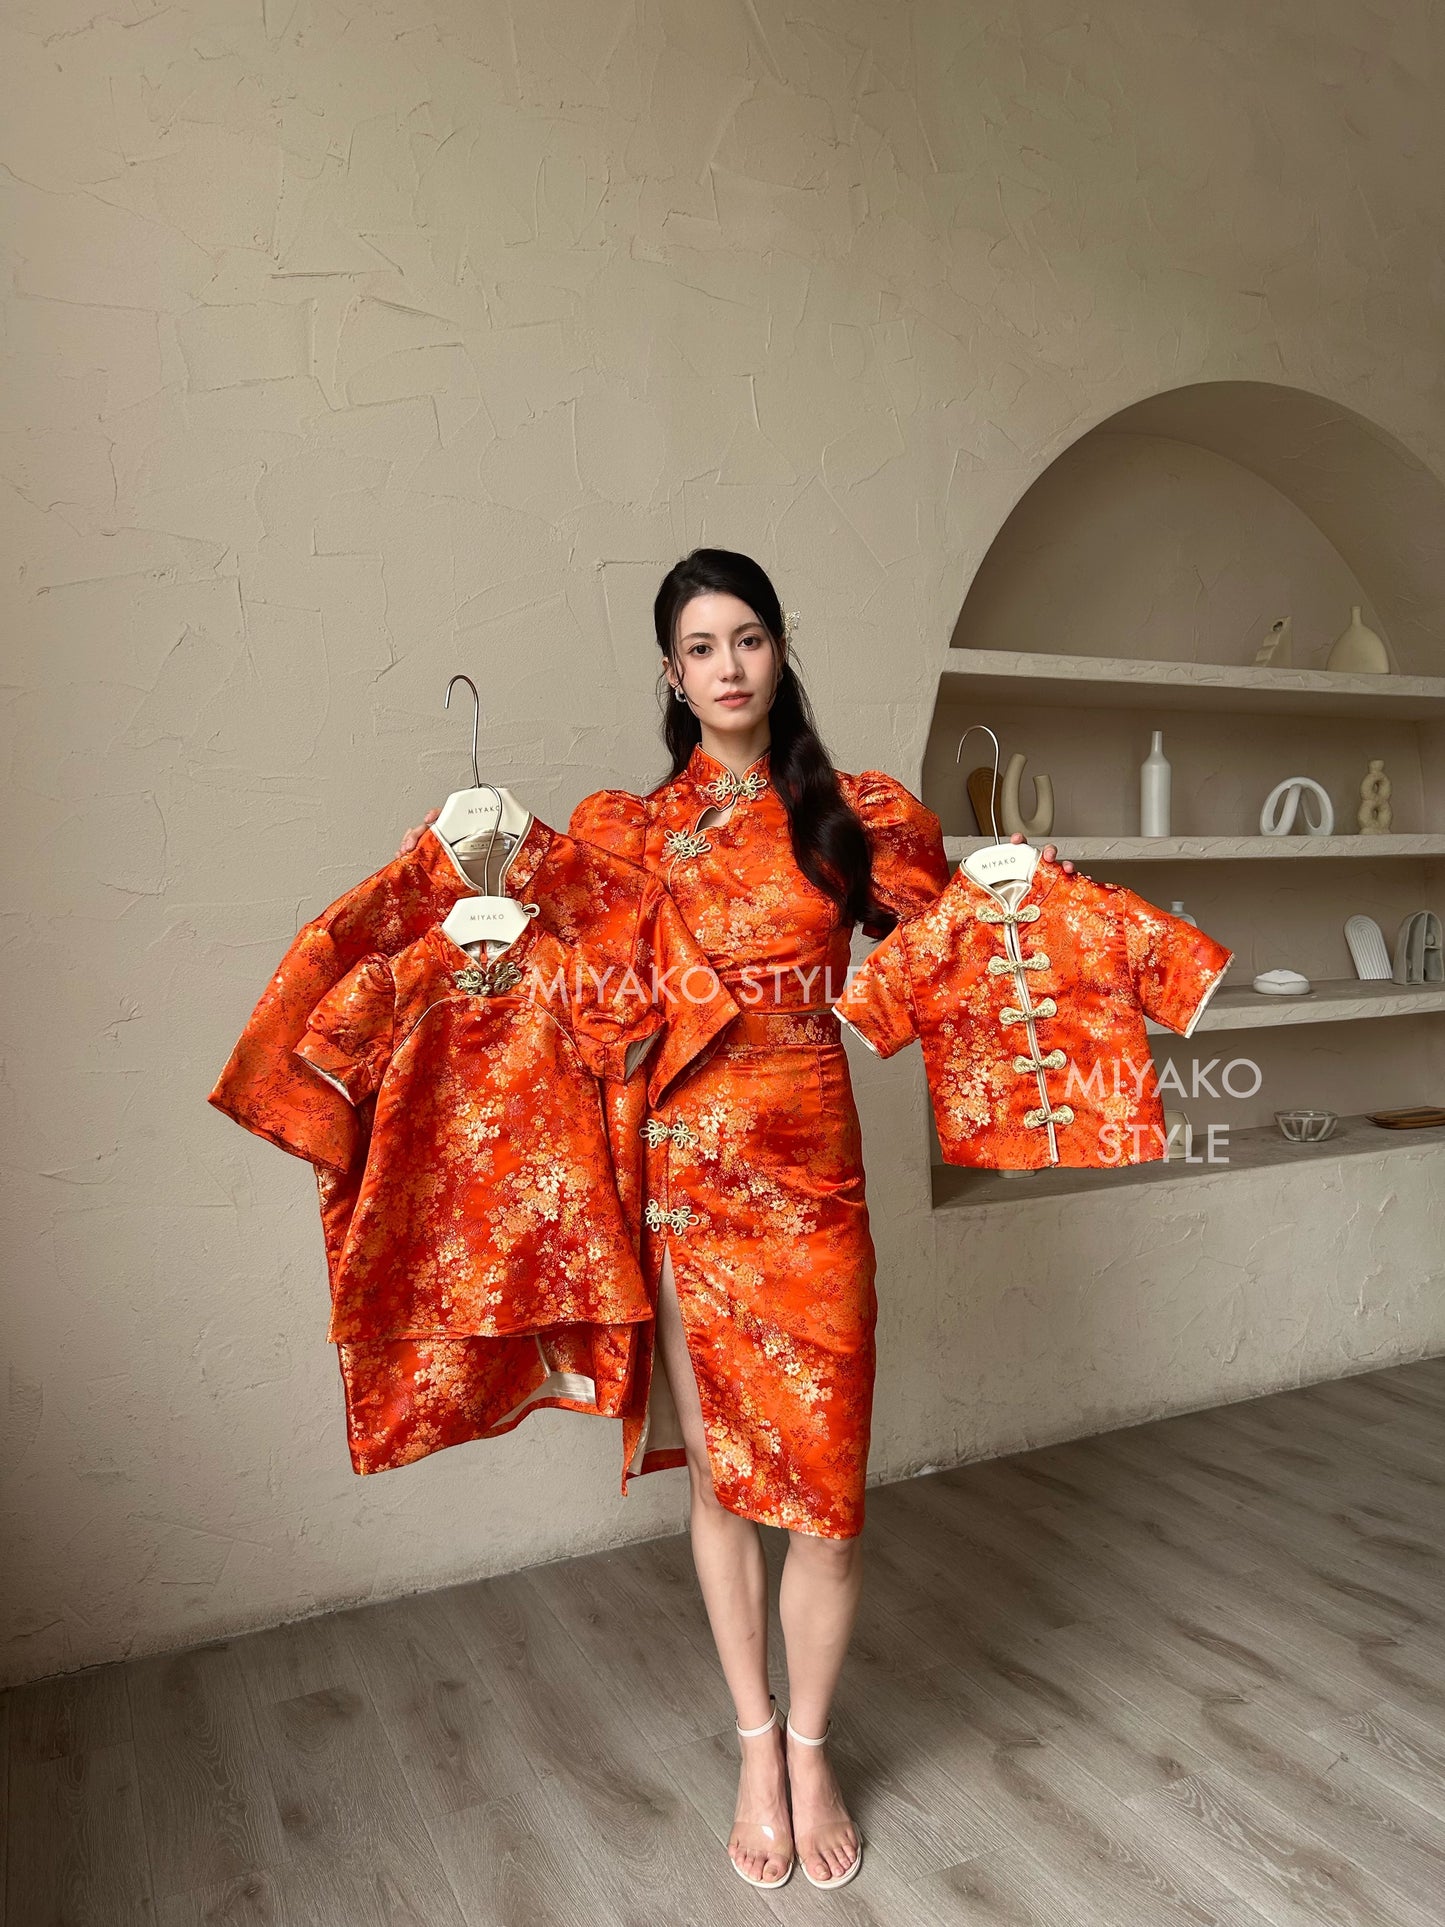 【华丽转身】Li Cheongsam Little Girl dress in Orange 橘色女童装